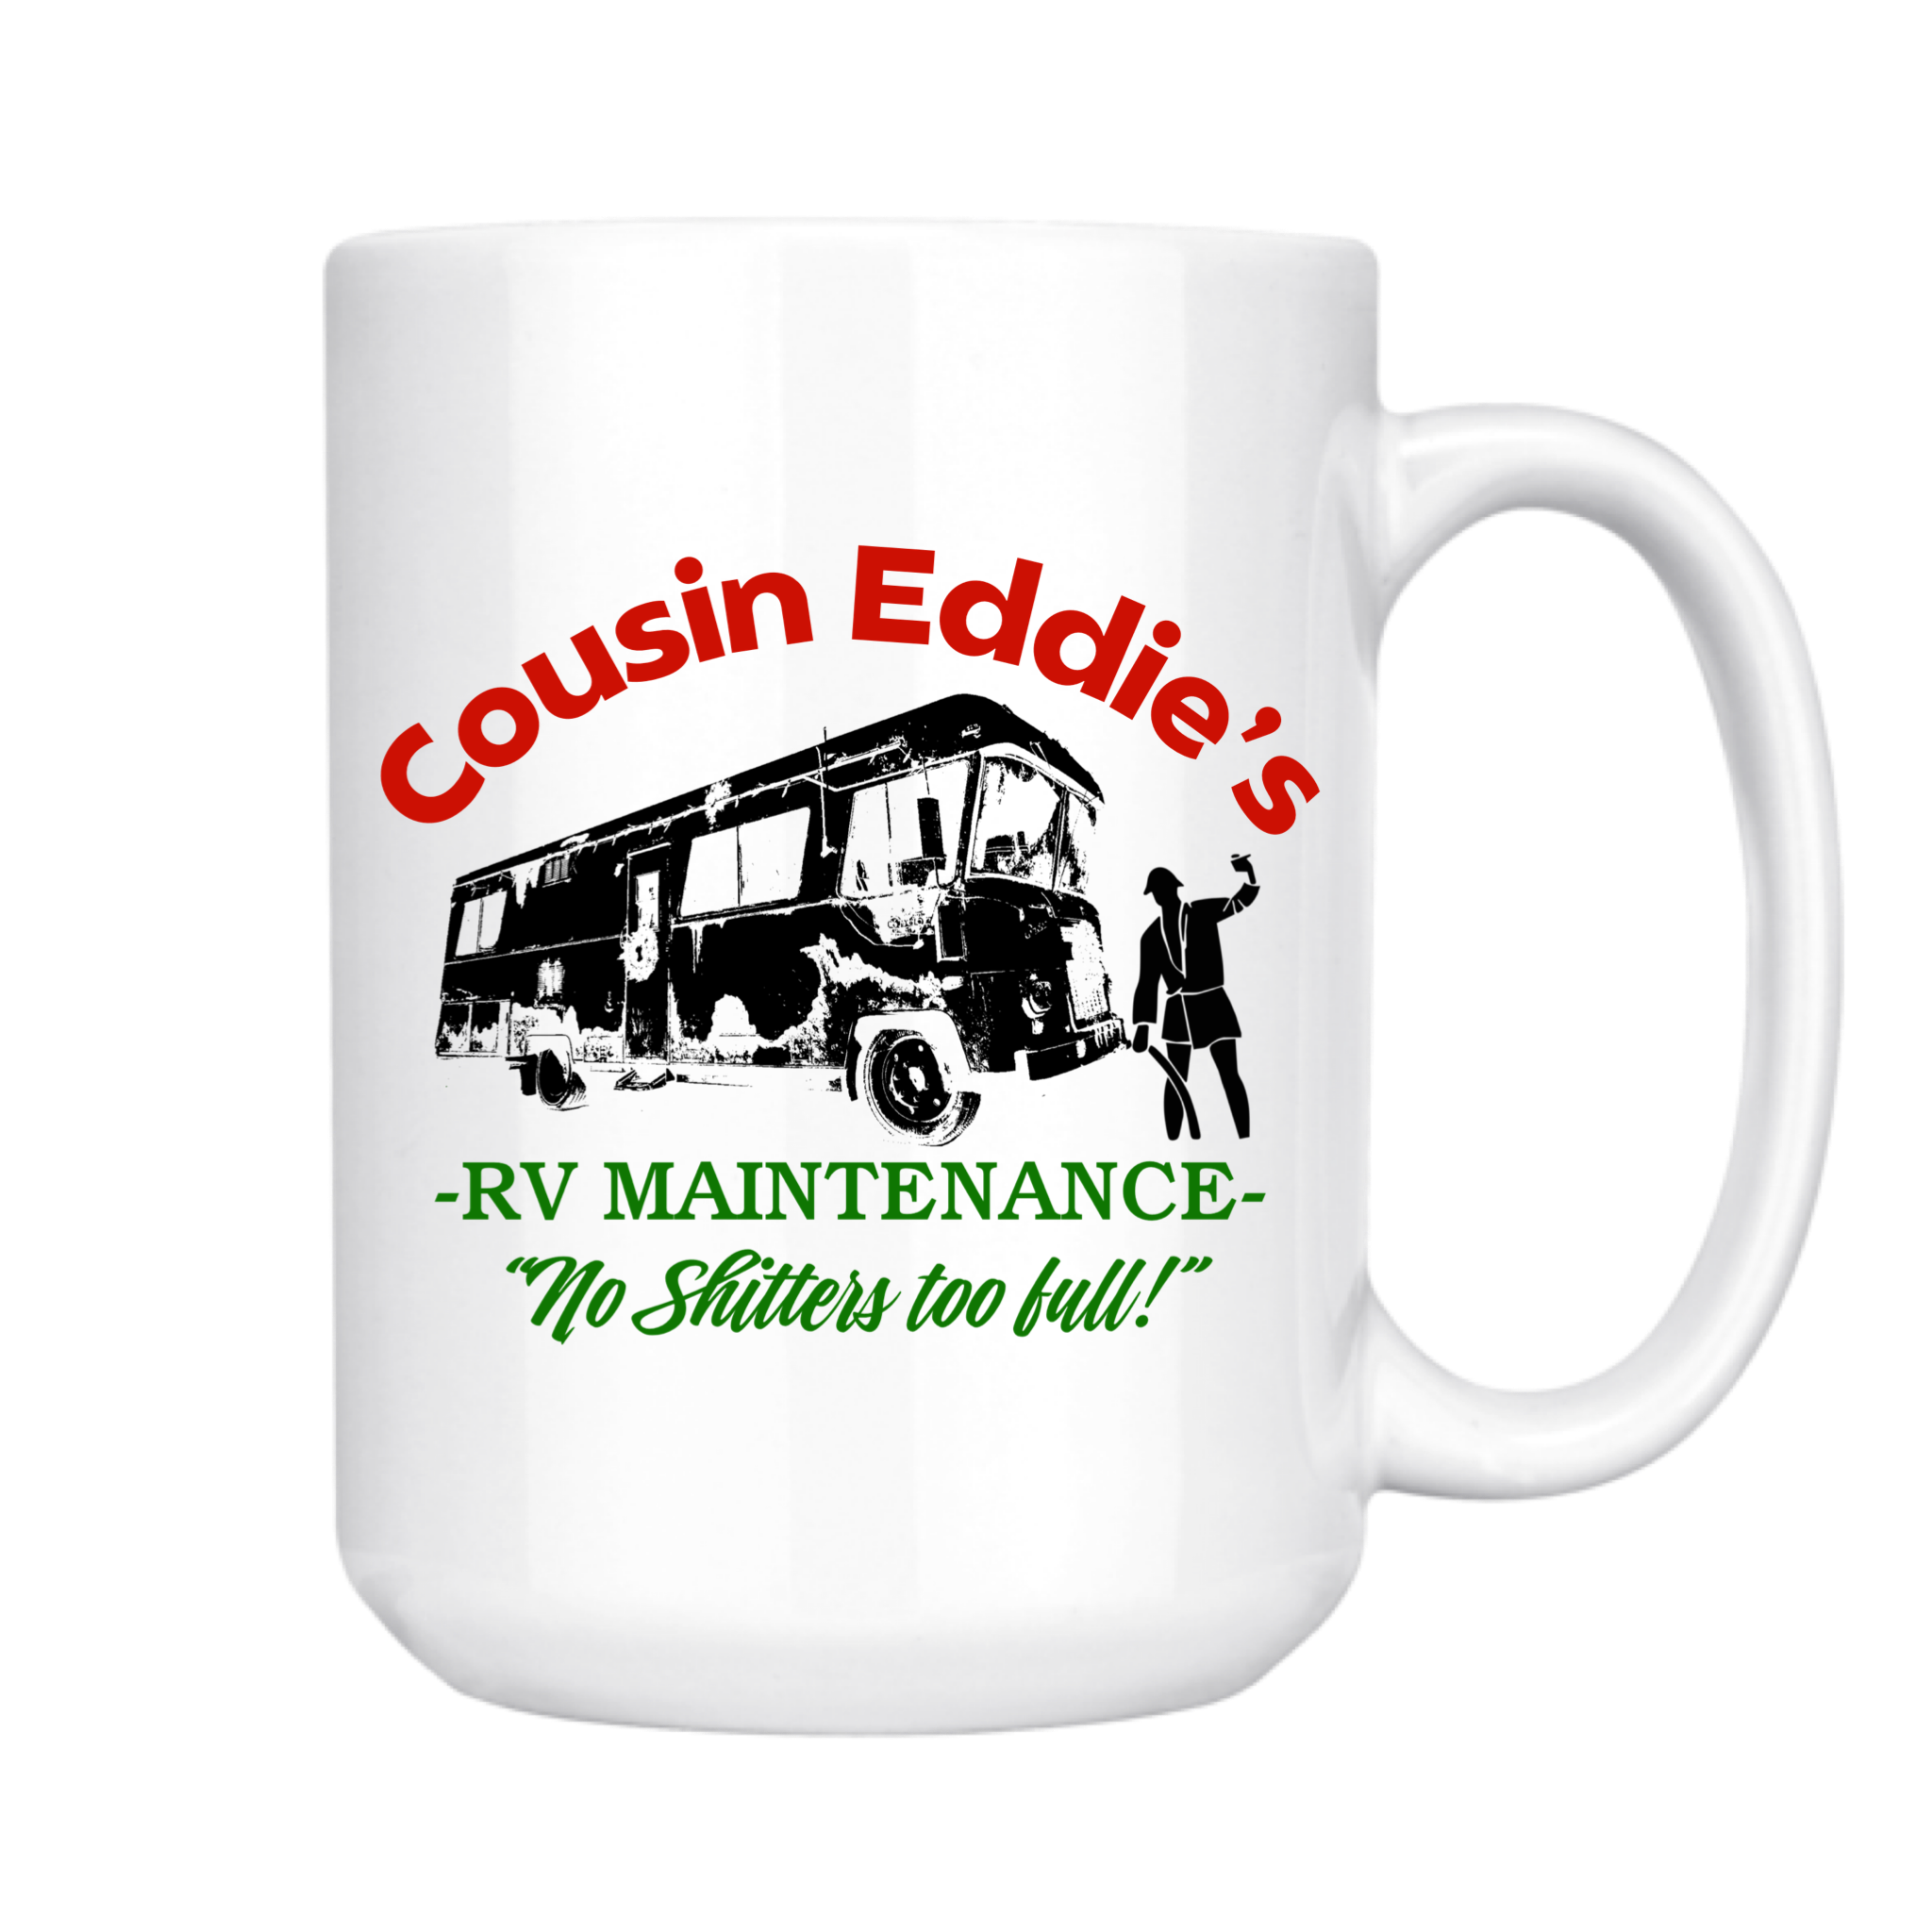 Cousin eddie RV Maintenance